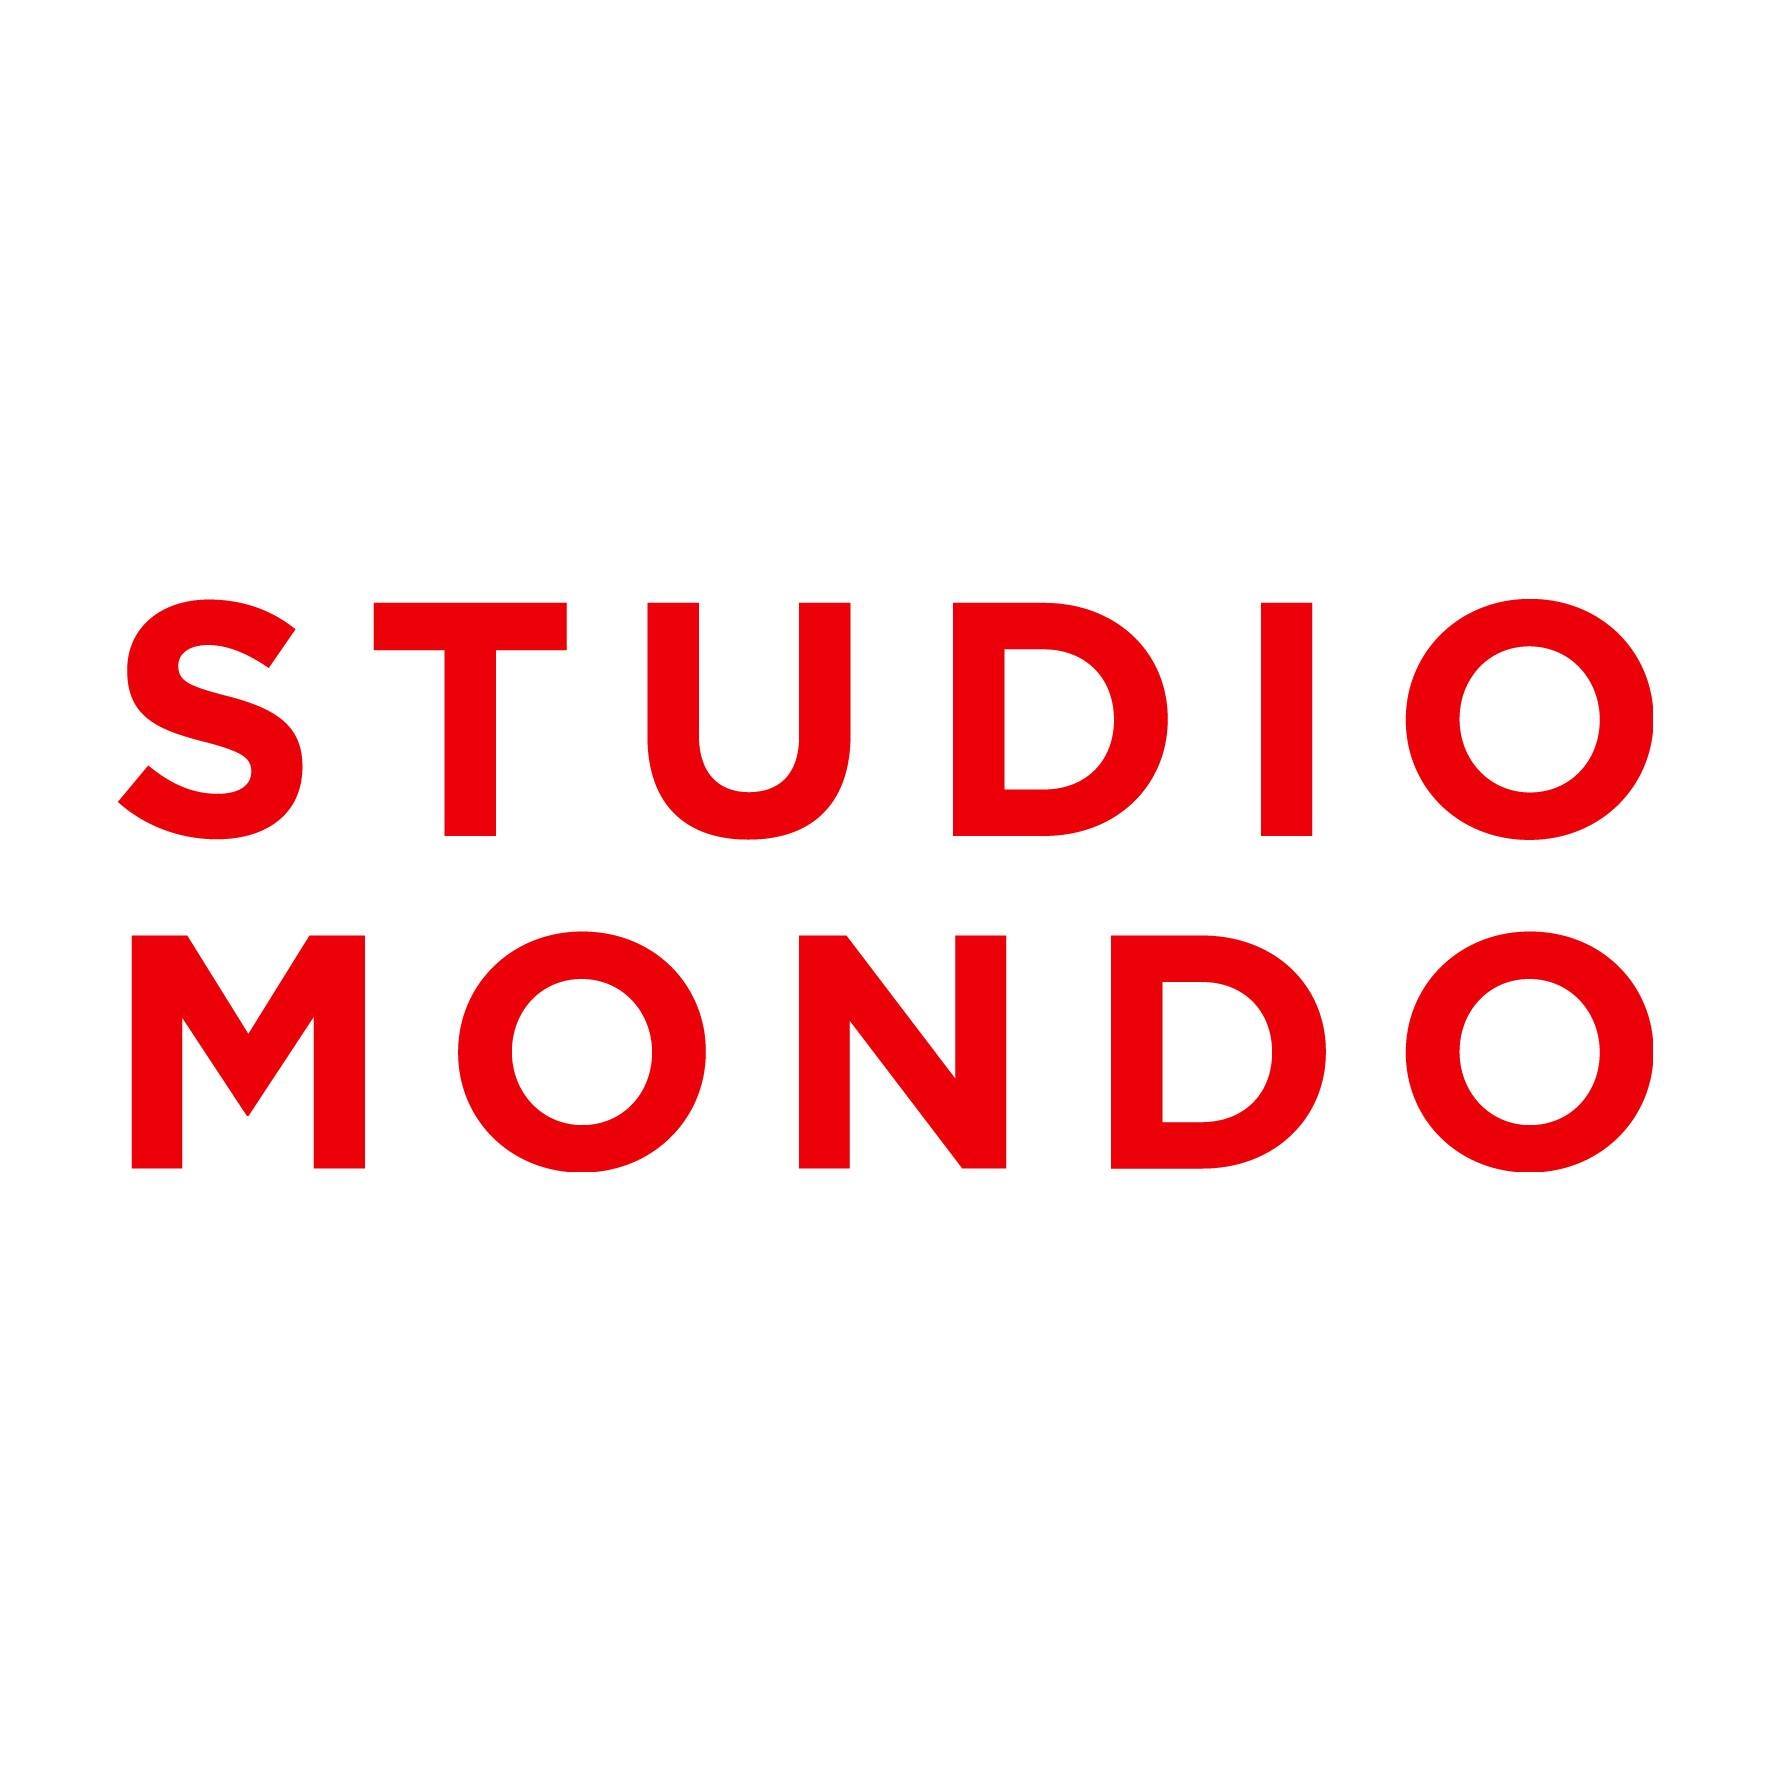 Mondo Studio